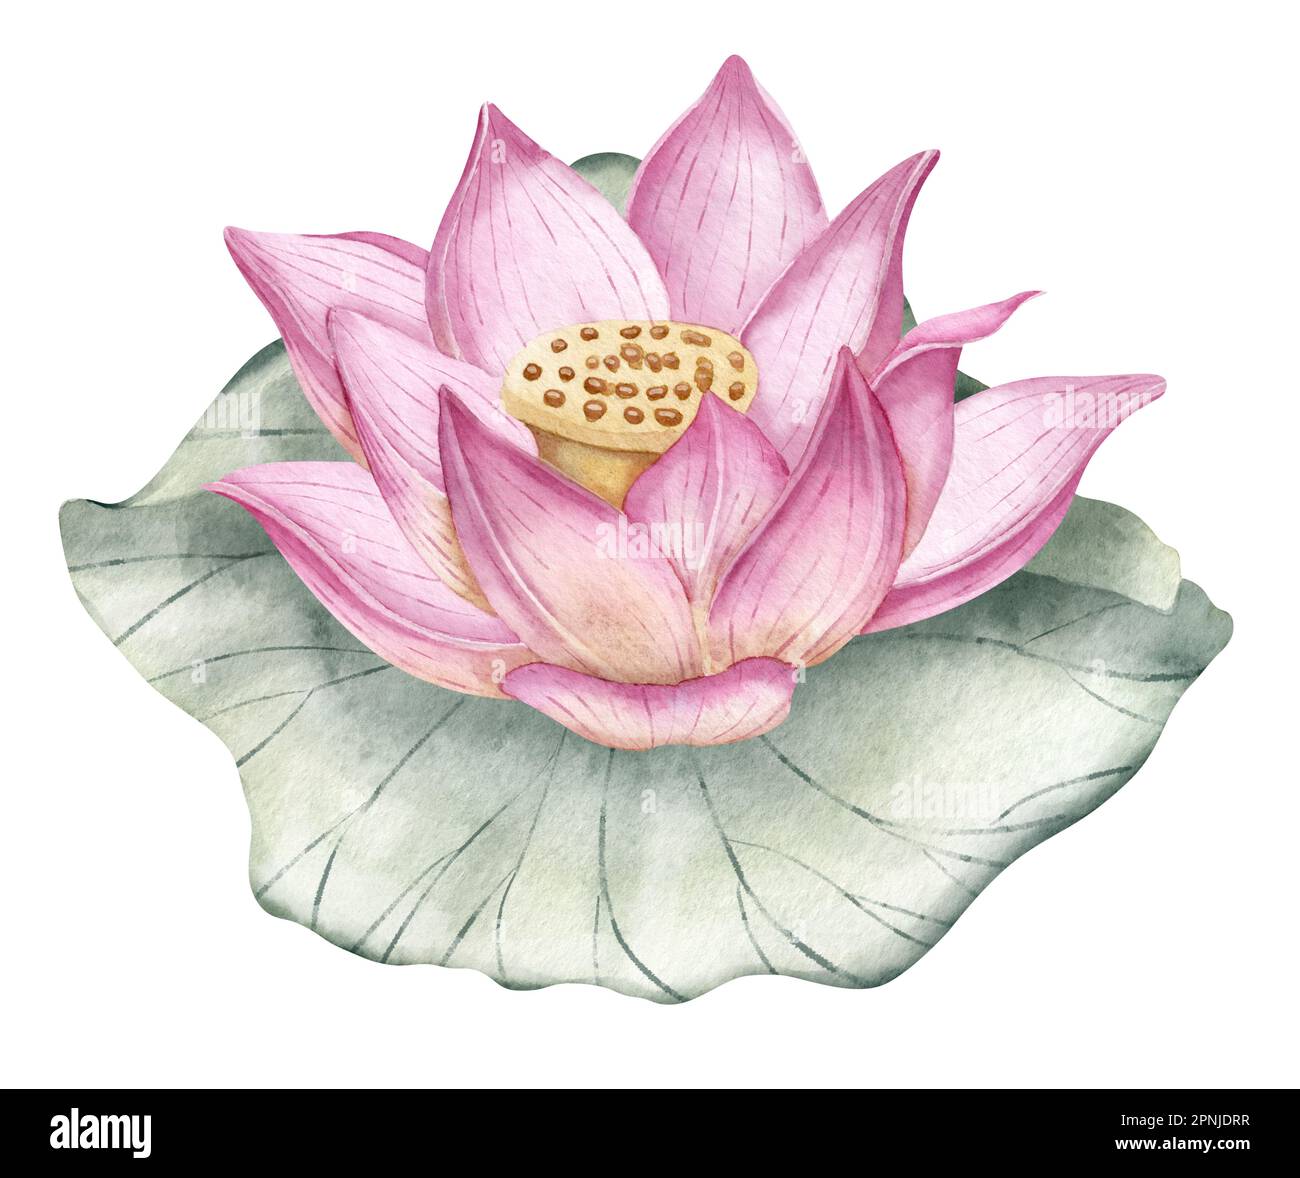 Fiore di loto. Acquerello disegnato a mano illustrazione di giglio d'acqua  rosa e foglia verde. Giglio d'acqua su sfondo isolato per icona o logo.  Disegno botanico della pianta asiatica tropicale per il